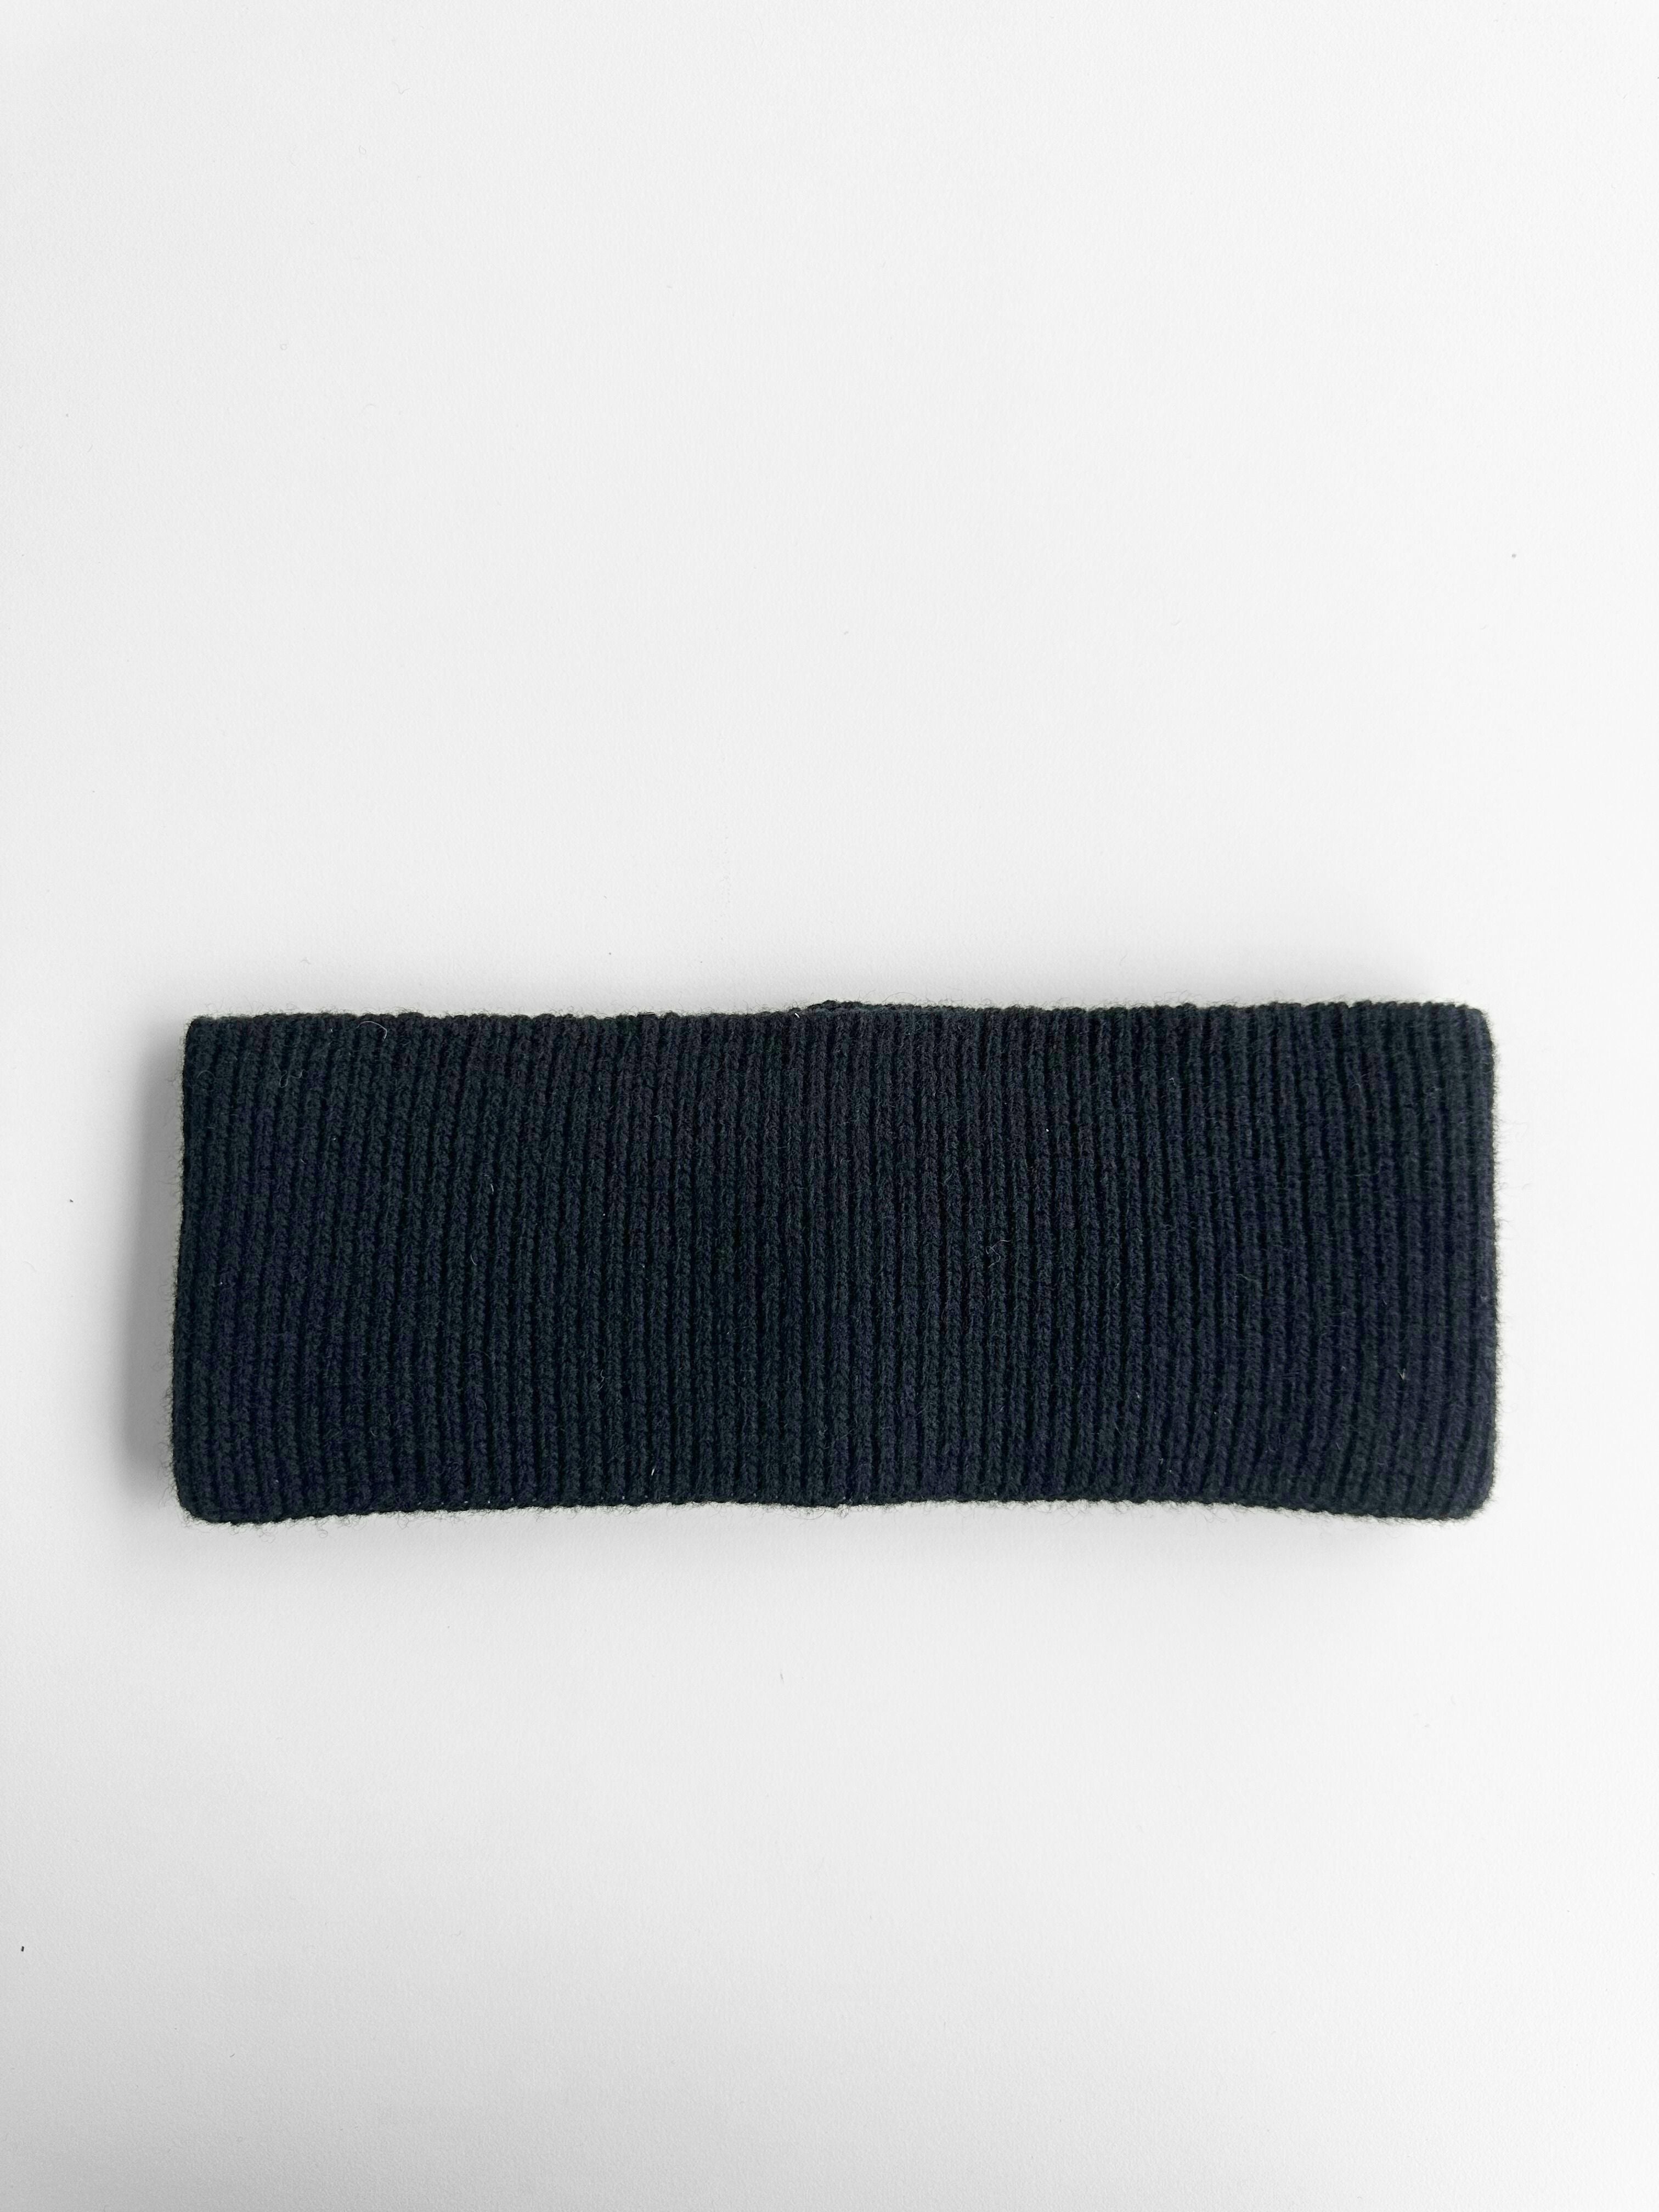 Merino Wool Headband - Black